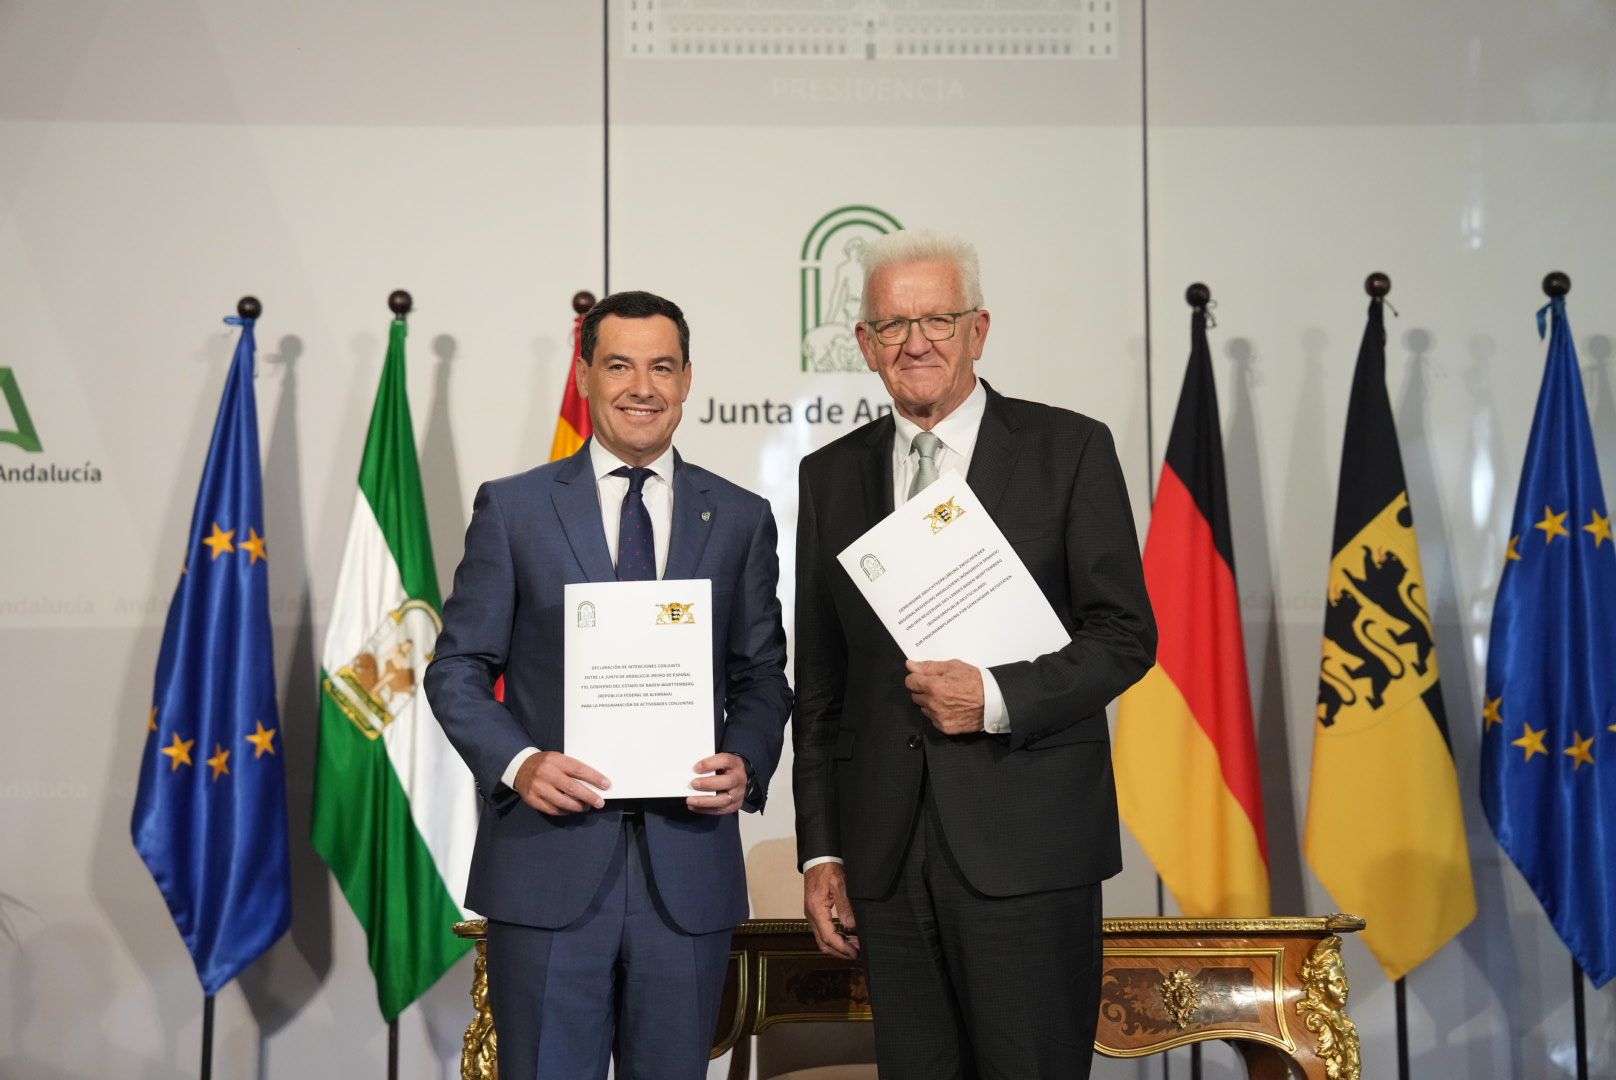 El presidente andaluz, Juan Manuel Moreno, junto al ministro presidente del Estado Federado de Baden-Württemberg, Winfried Kretschmann.